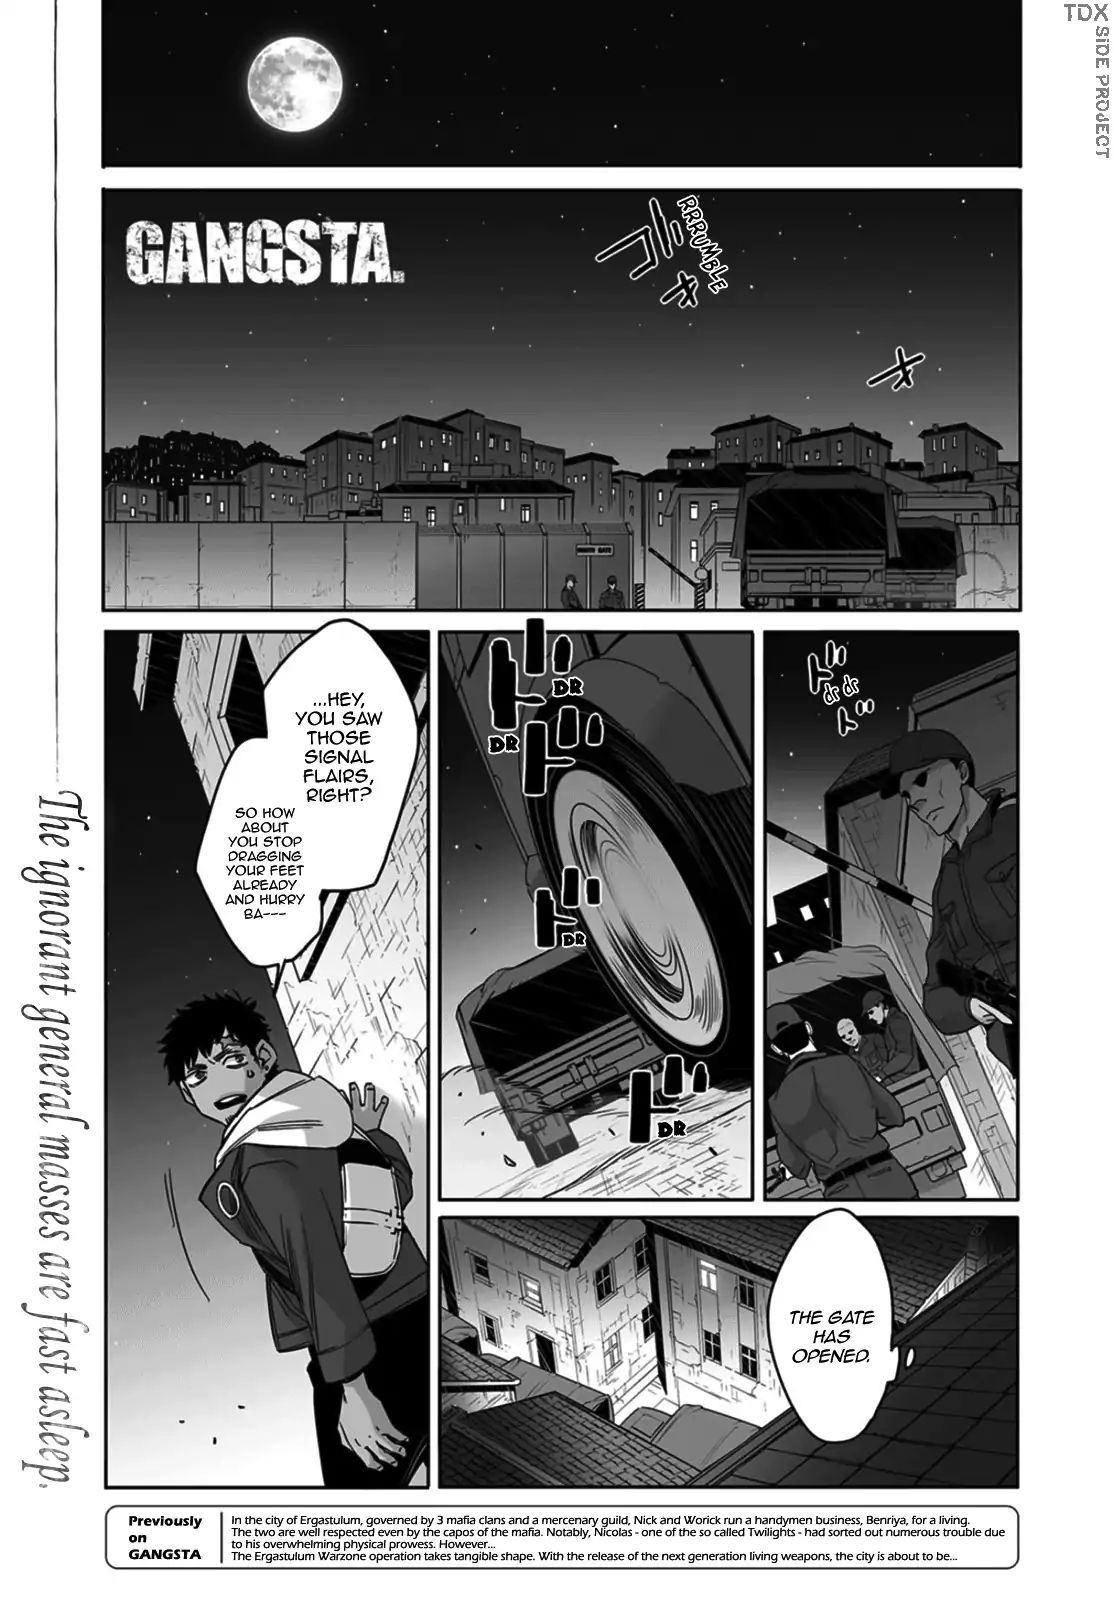 Gangsta. - Page 1